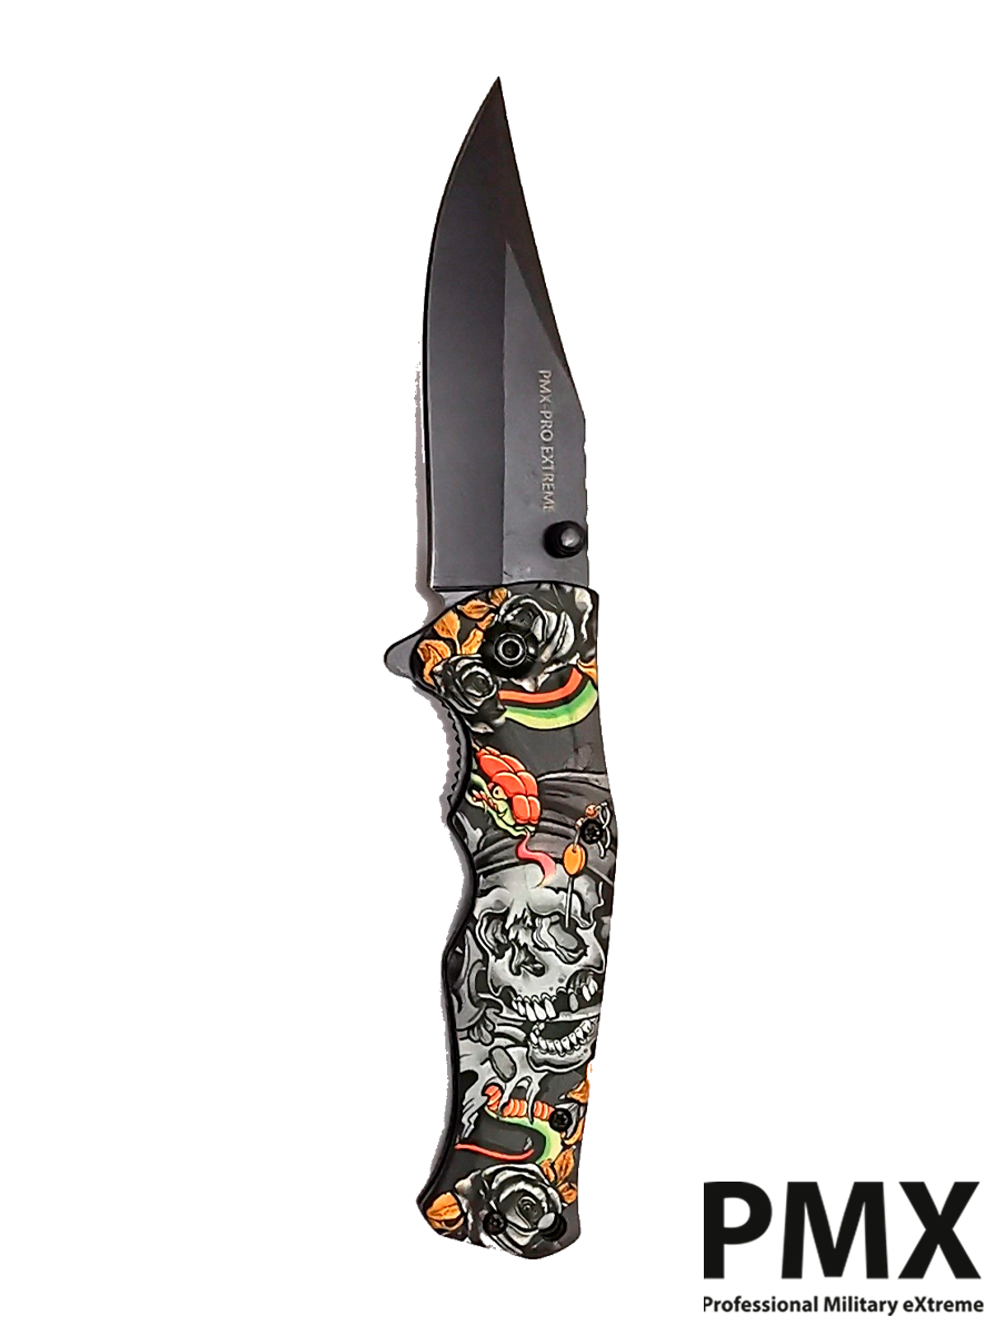 Нож складной PMX-PRO Extreme Special Series (PMX-010B) сталь AUS8. С черепом и змеёй